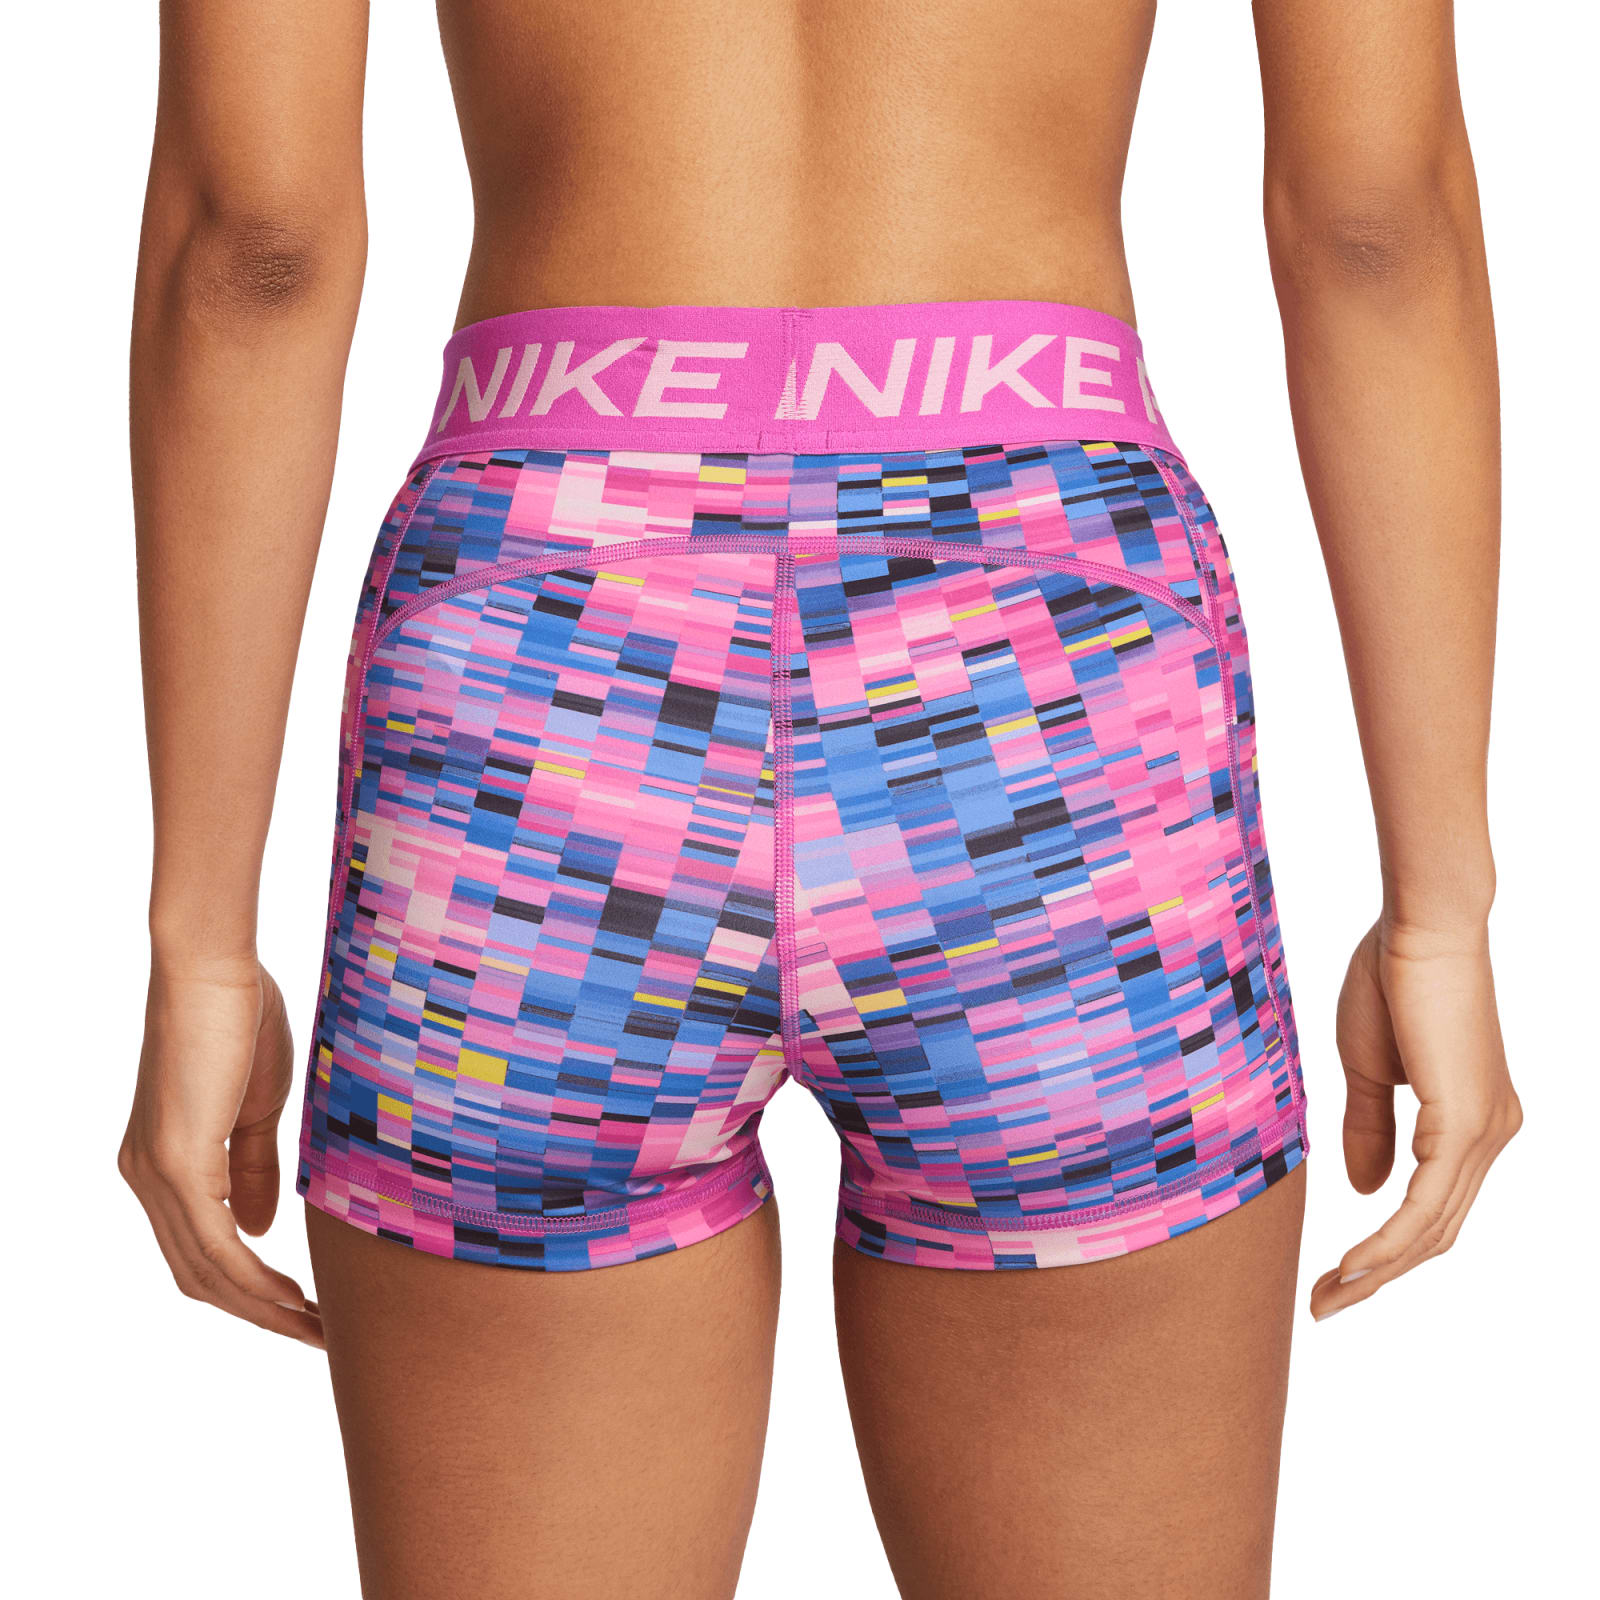 Nike Pro Training 3 inch booty shorts in fuschia pink